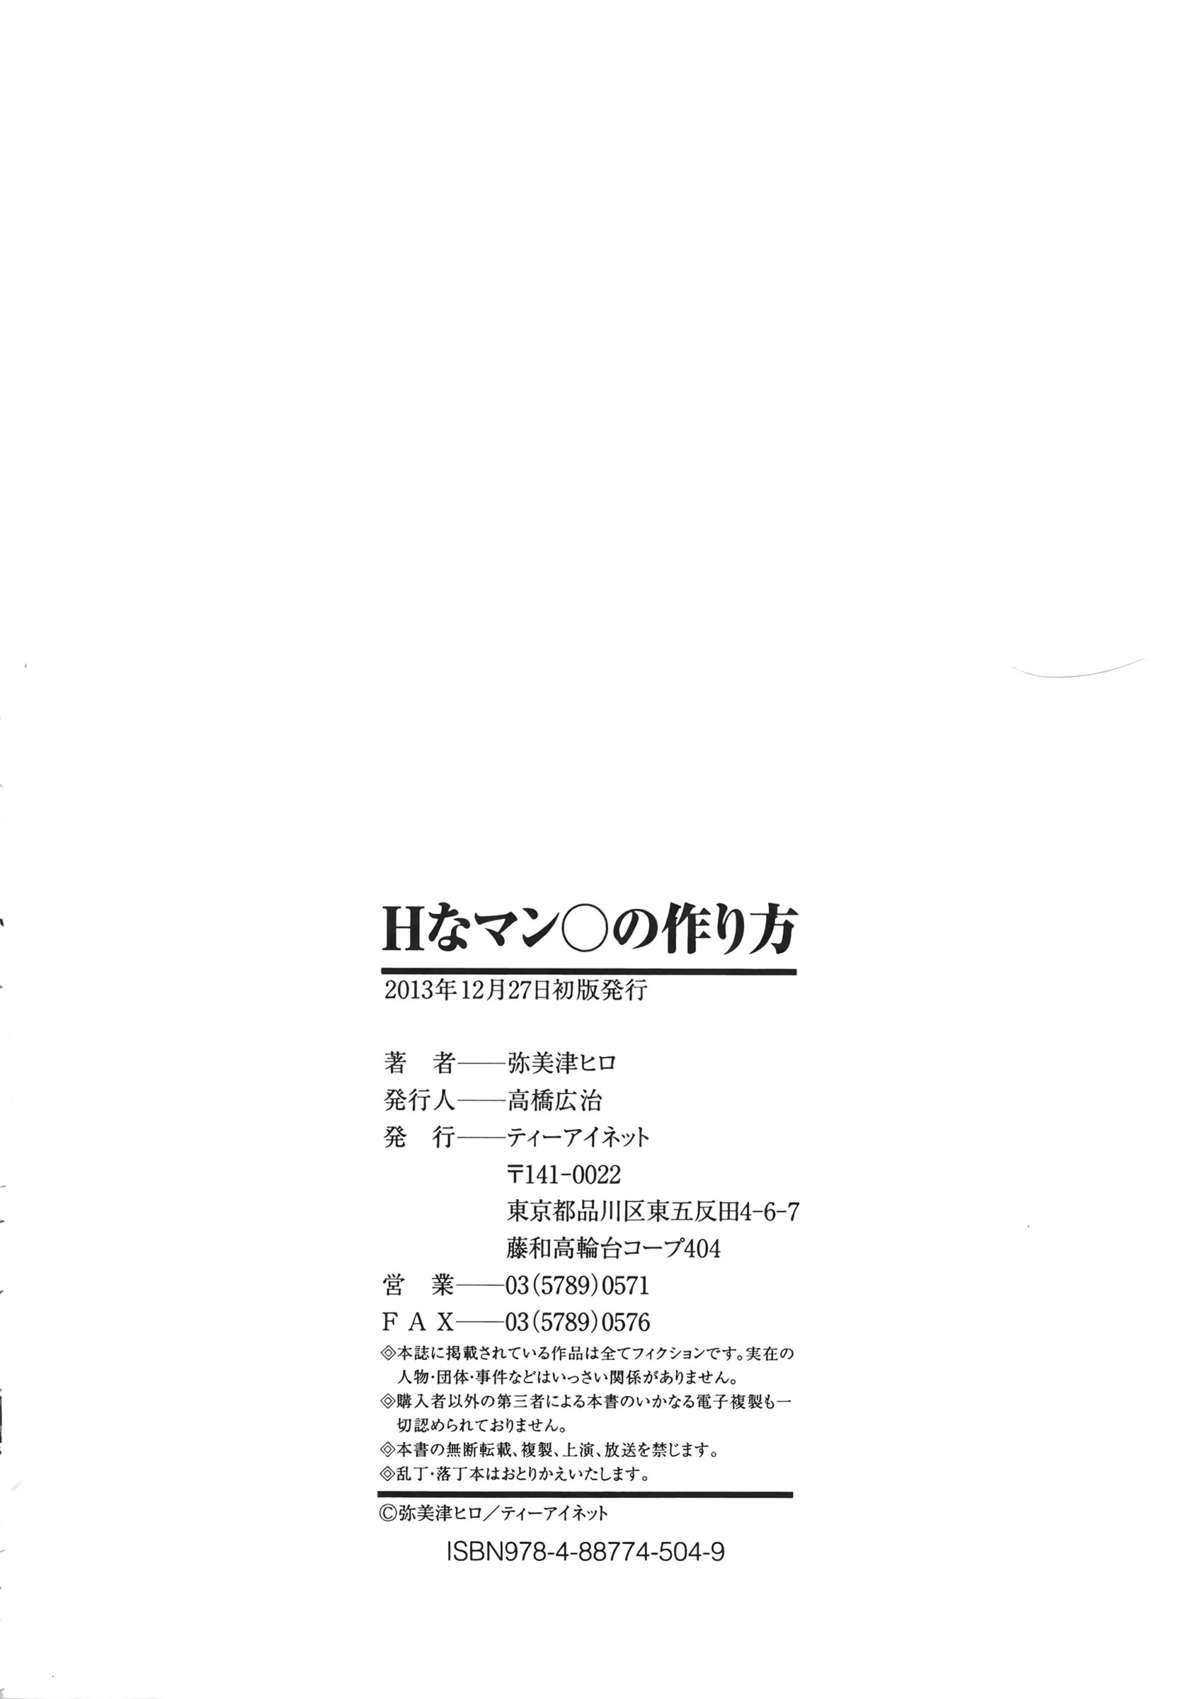 [弥美津ヒロ] Hなマン○の作り方 + ラフイラスト集, 「複製原画」